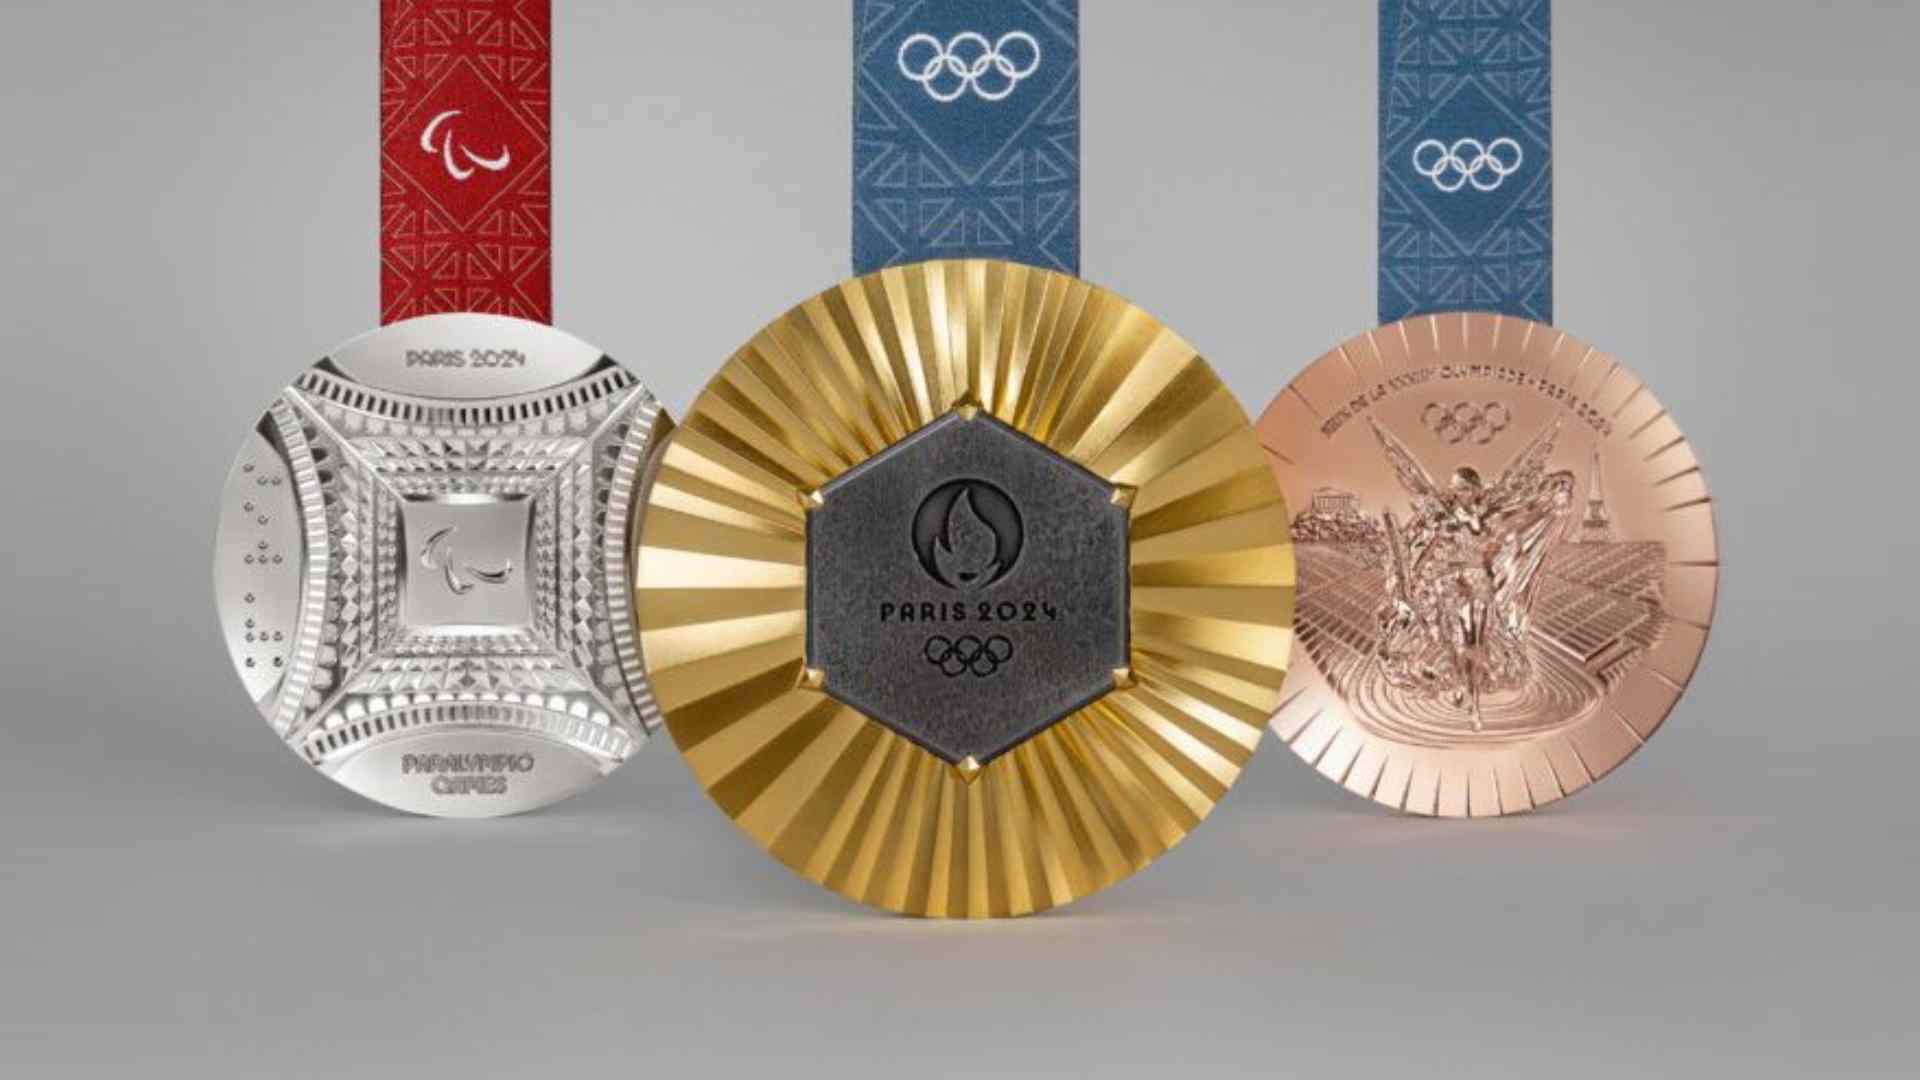 Las medallas de los Juegos de París 2024: una simbiosis única entre el deporte y la historia francesa